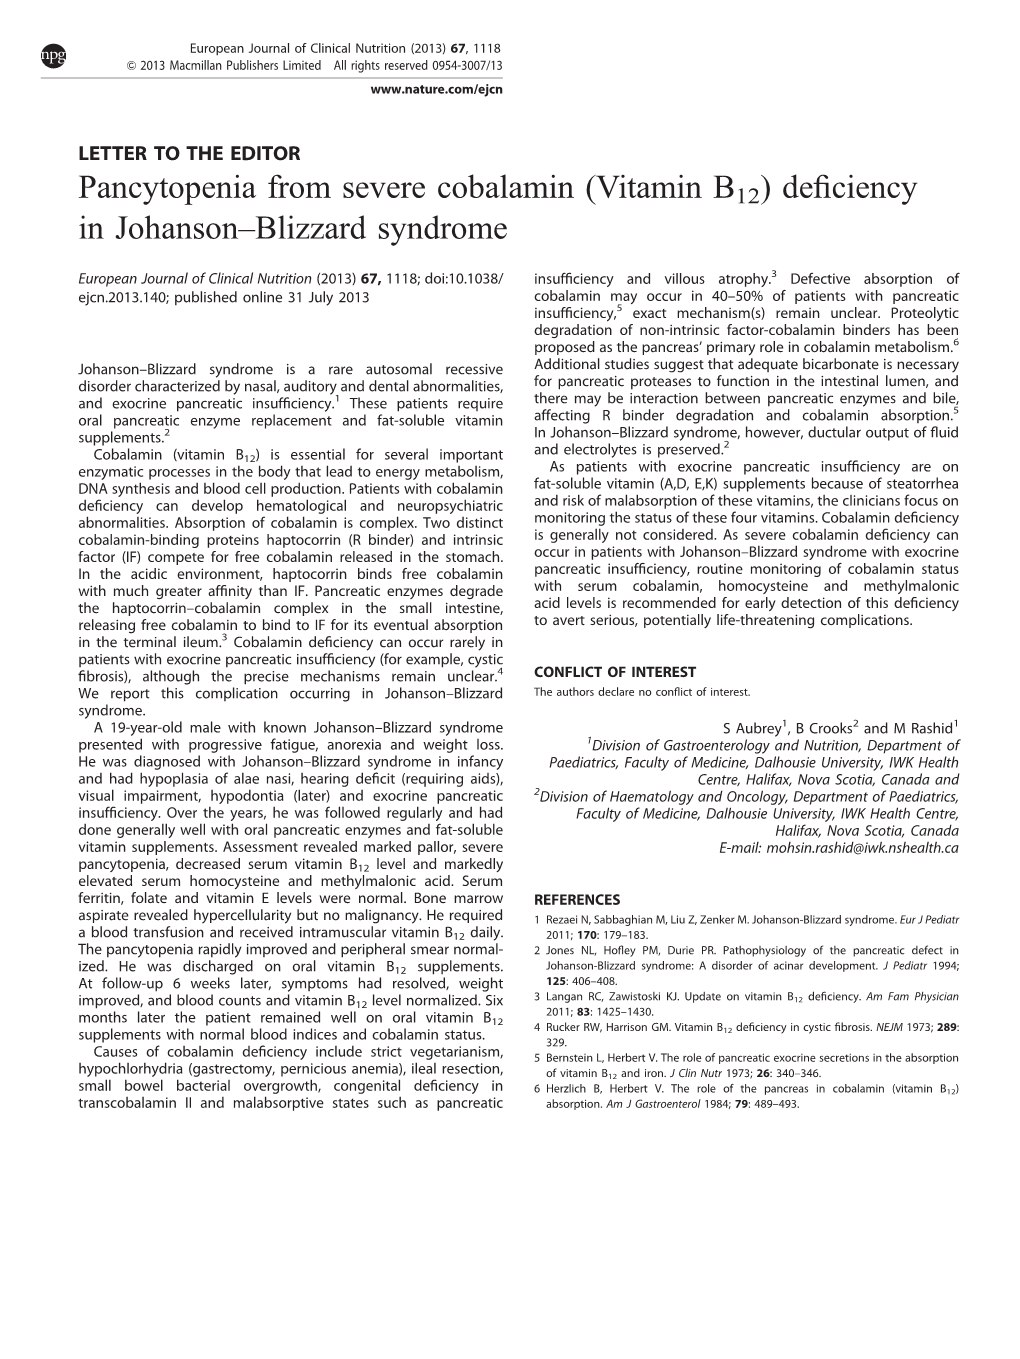 Vitamin B12) Deﬁciency in Johanson–Blizzard Syndrome